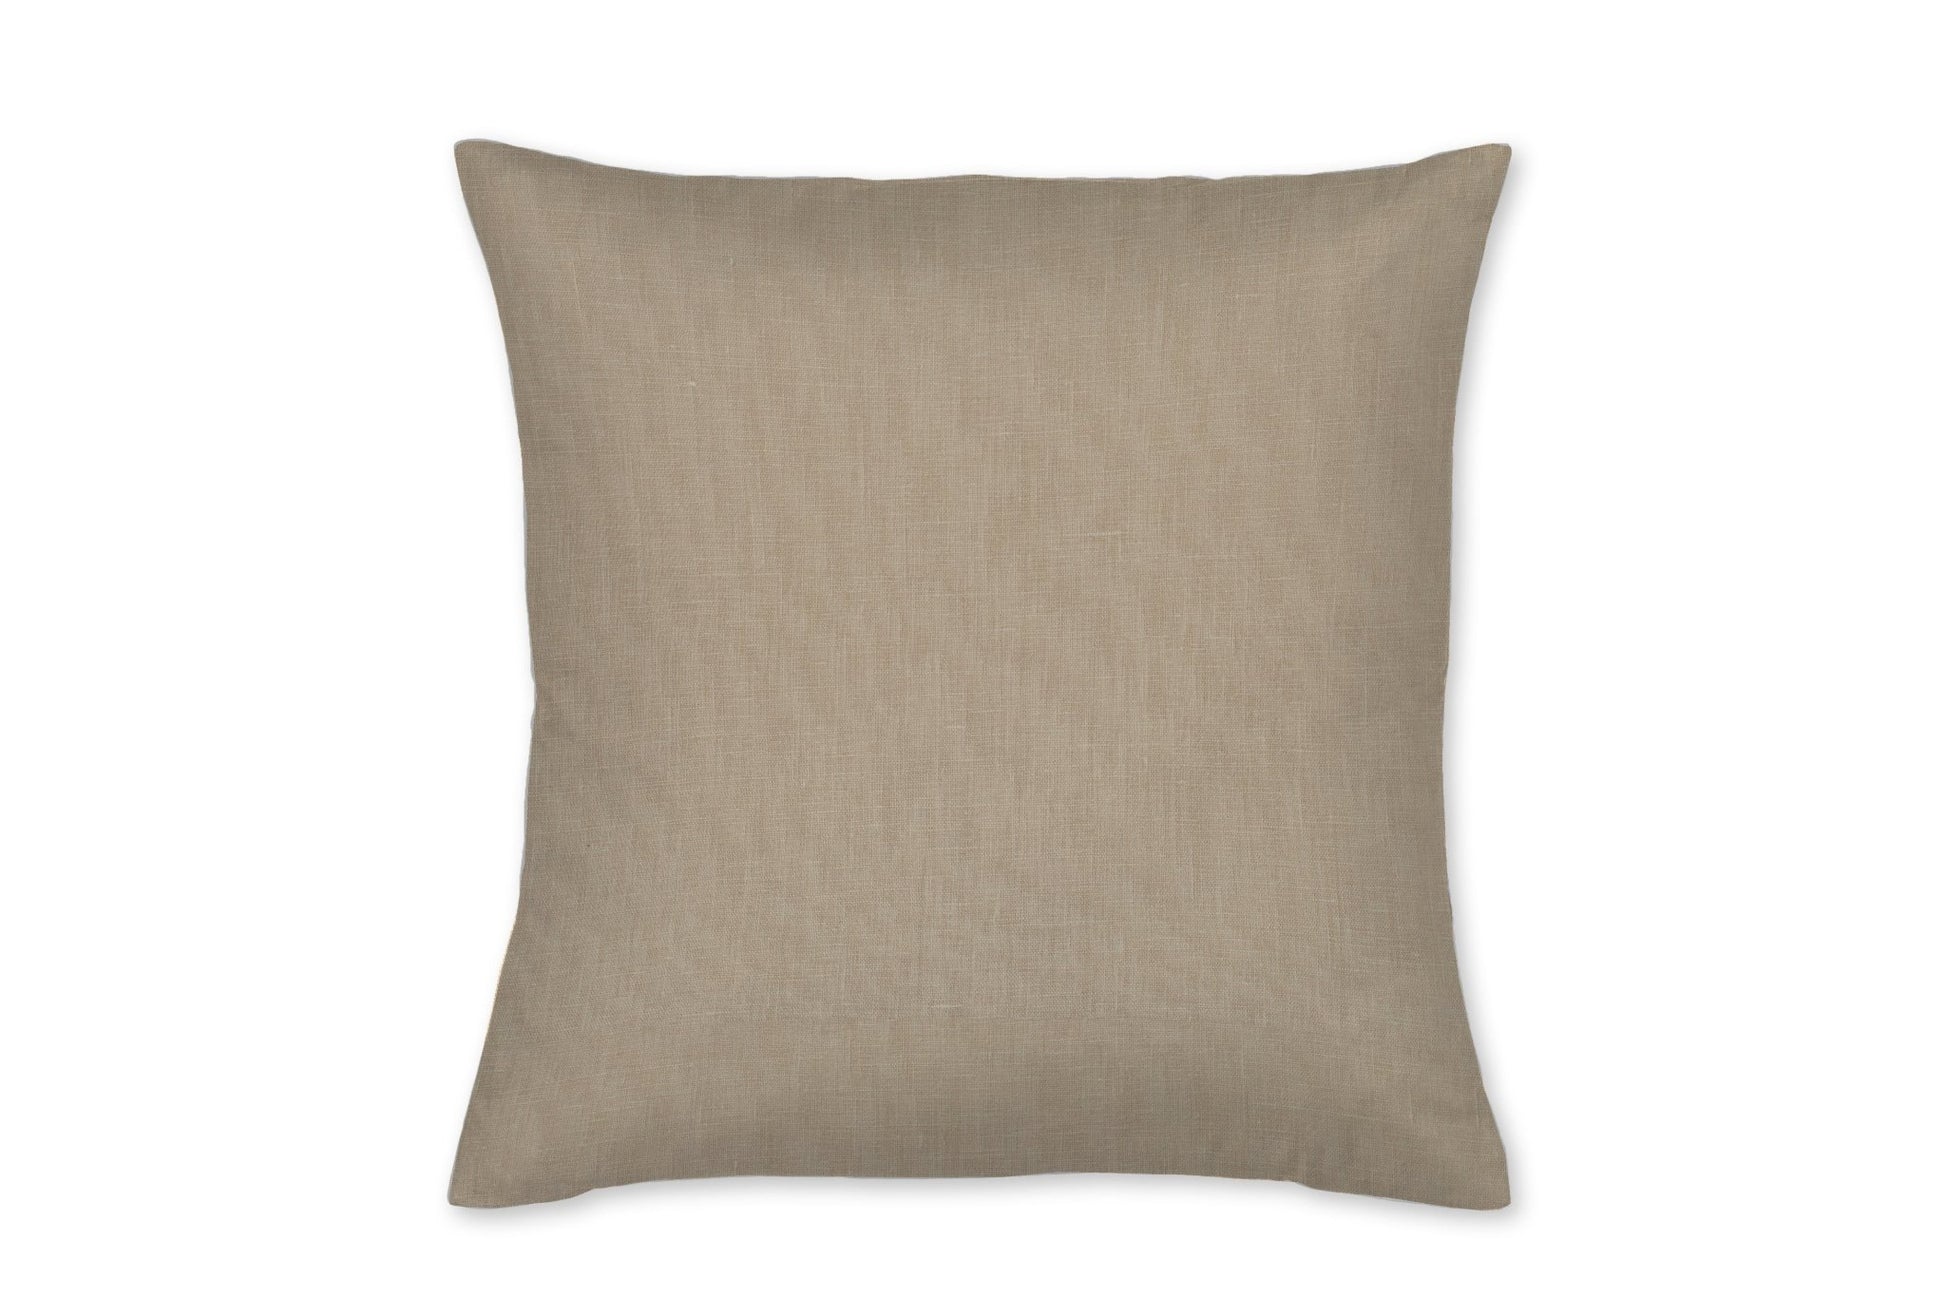 Natural Linen Throw Pillow - New Arrivals Inc